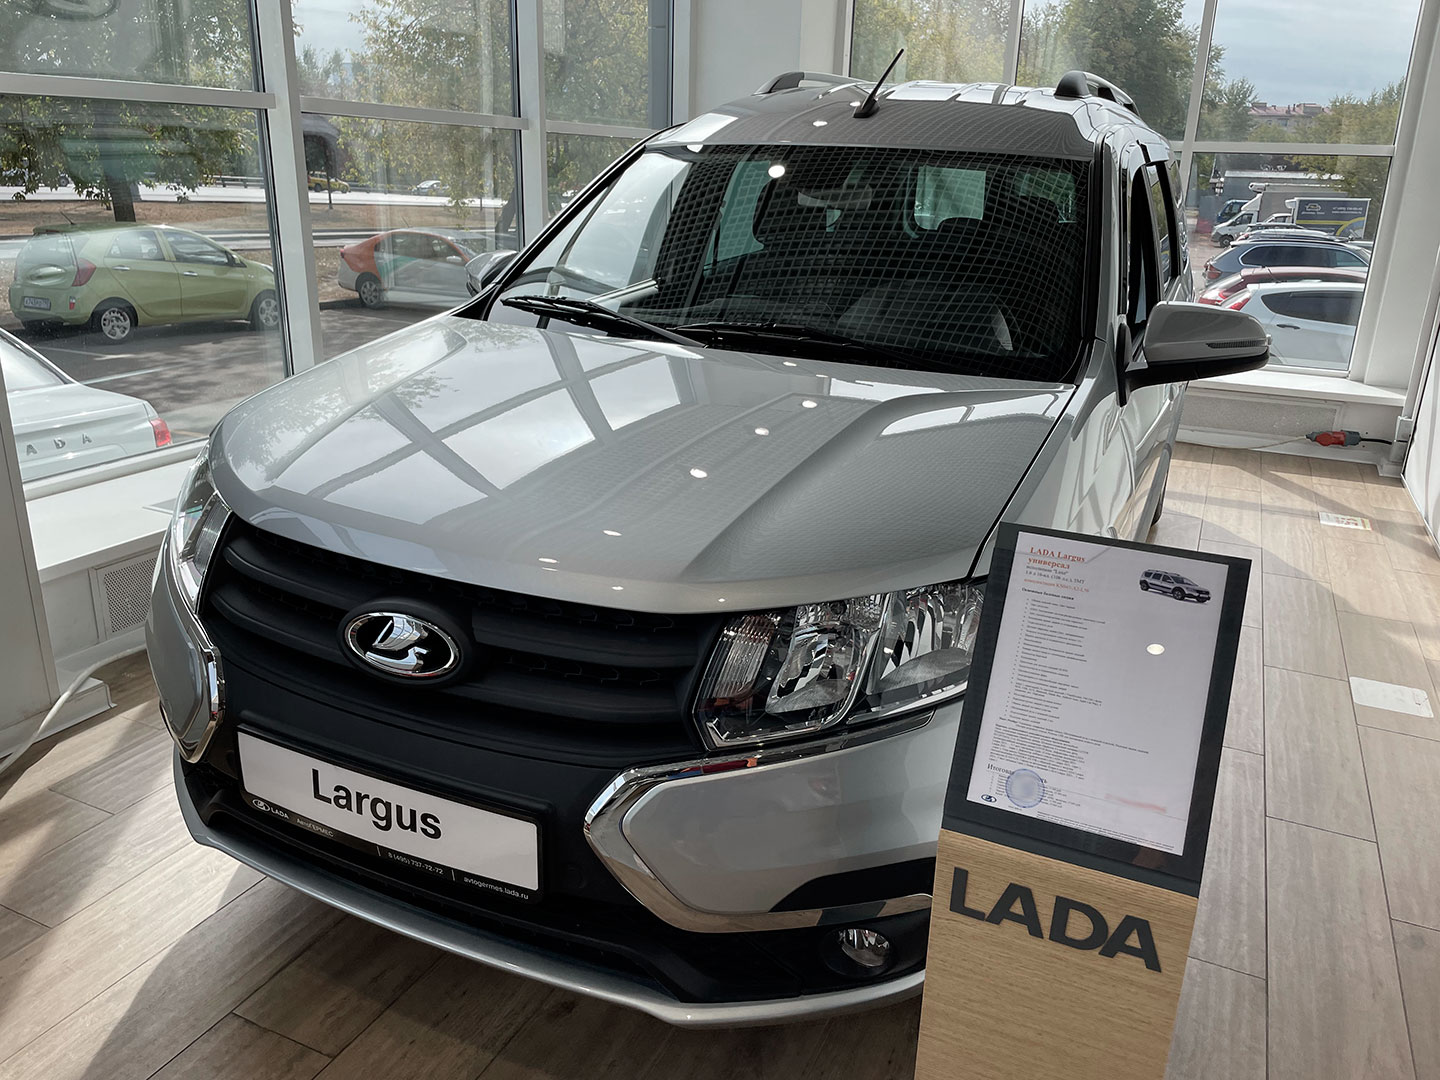 Lada Largus универсал в одной из комплектаций стоит 1,935 млн руб. В списке опций есть ковры в салон и в багажник, дефлектор лобового стекла, шумопоглощающая обработка, защитная сетка радиатора и другое оборудование